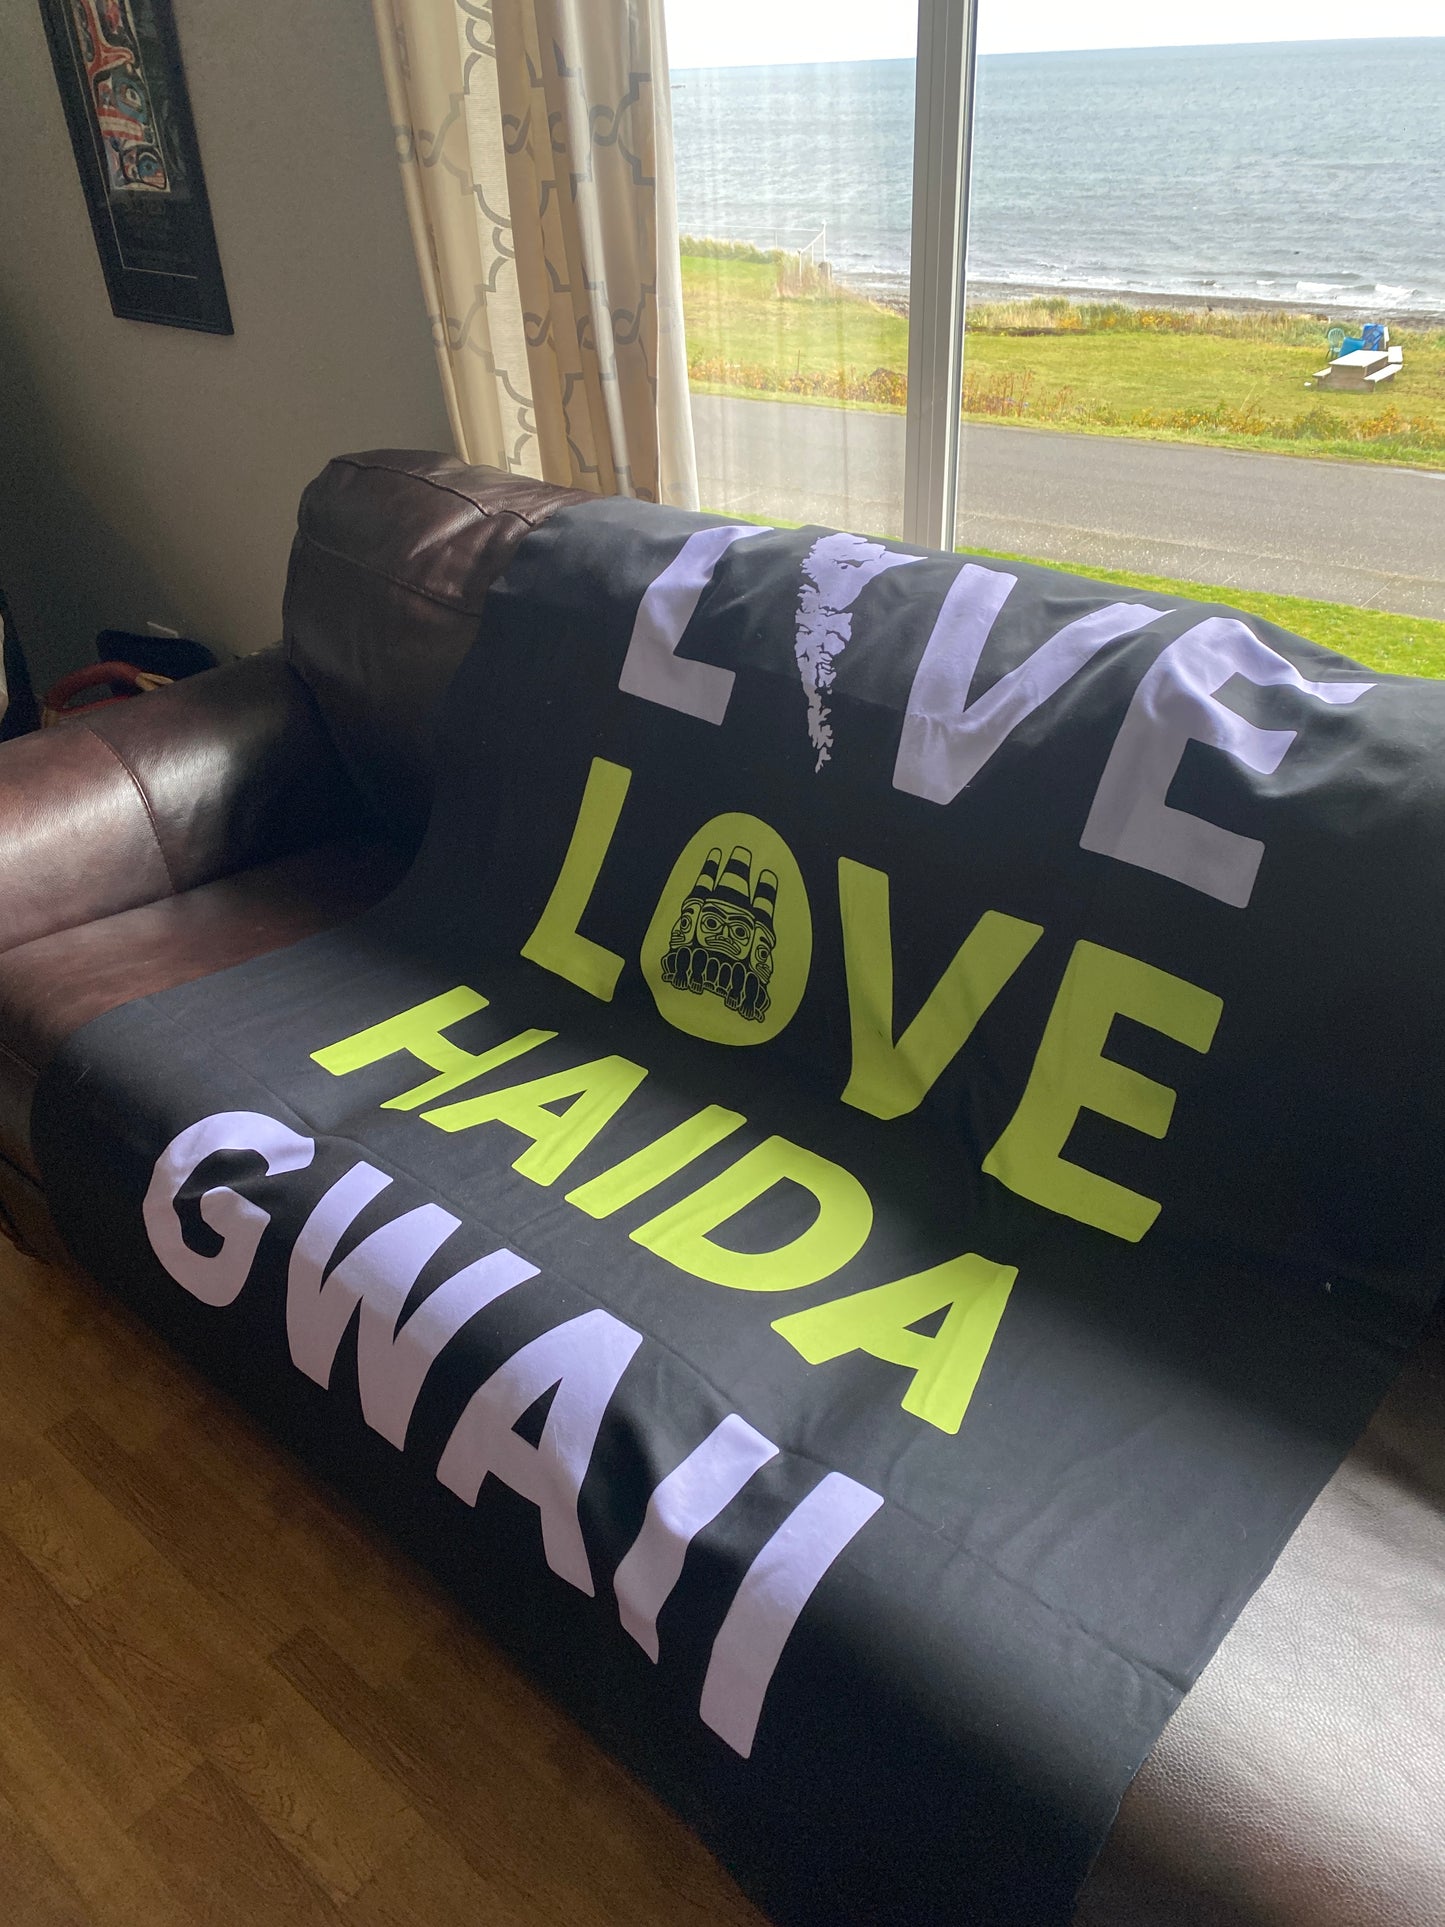 Live Love Haida Gwaii Blanket